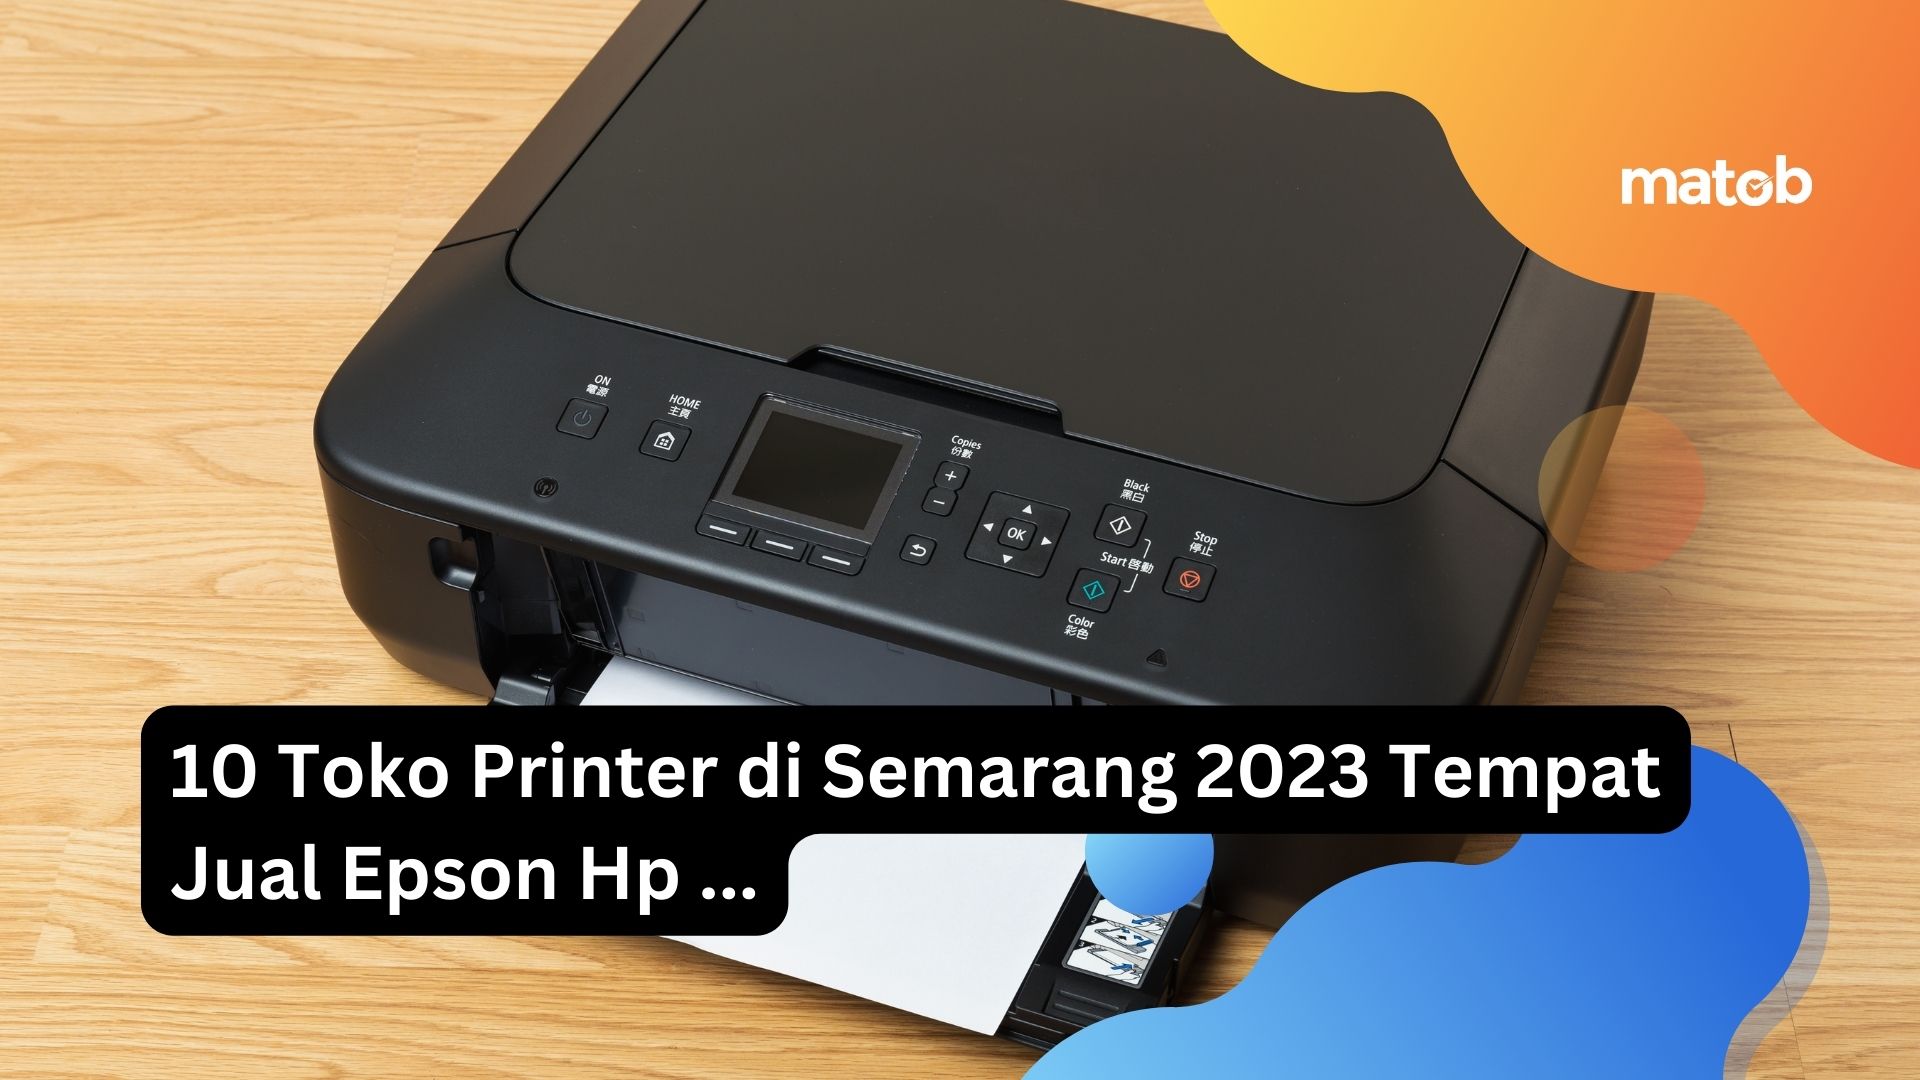 10 Toko Printer di Semarang 2023 Tempat Jual Epson Hp